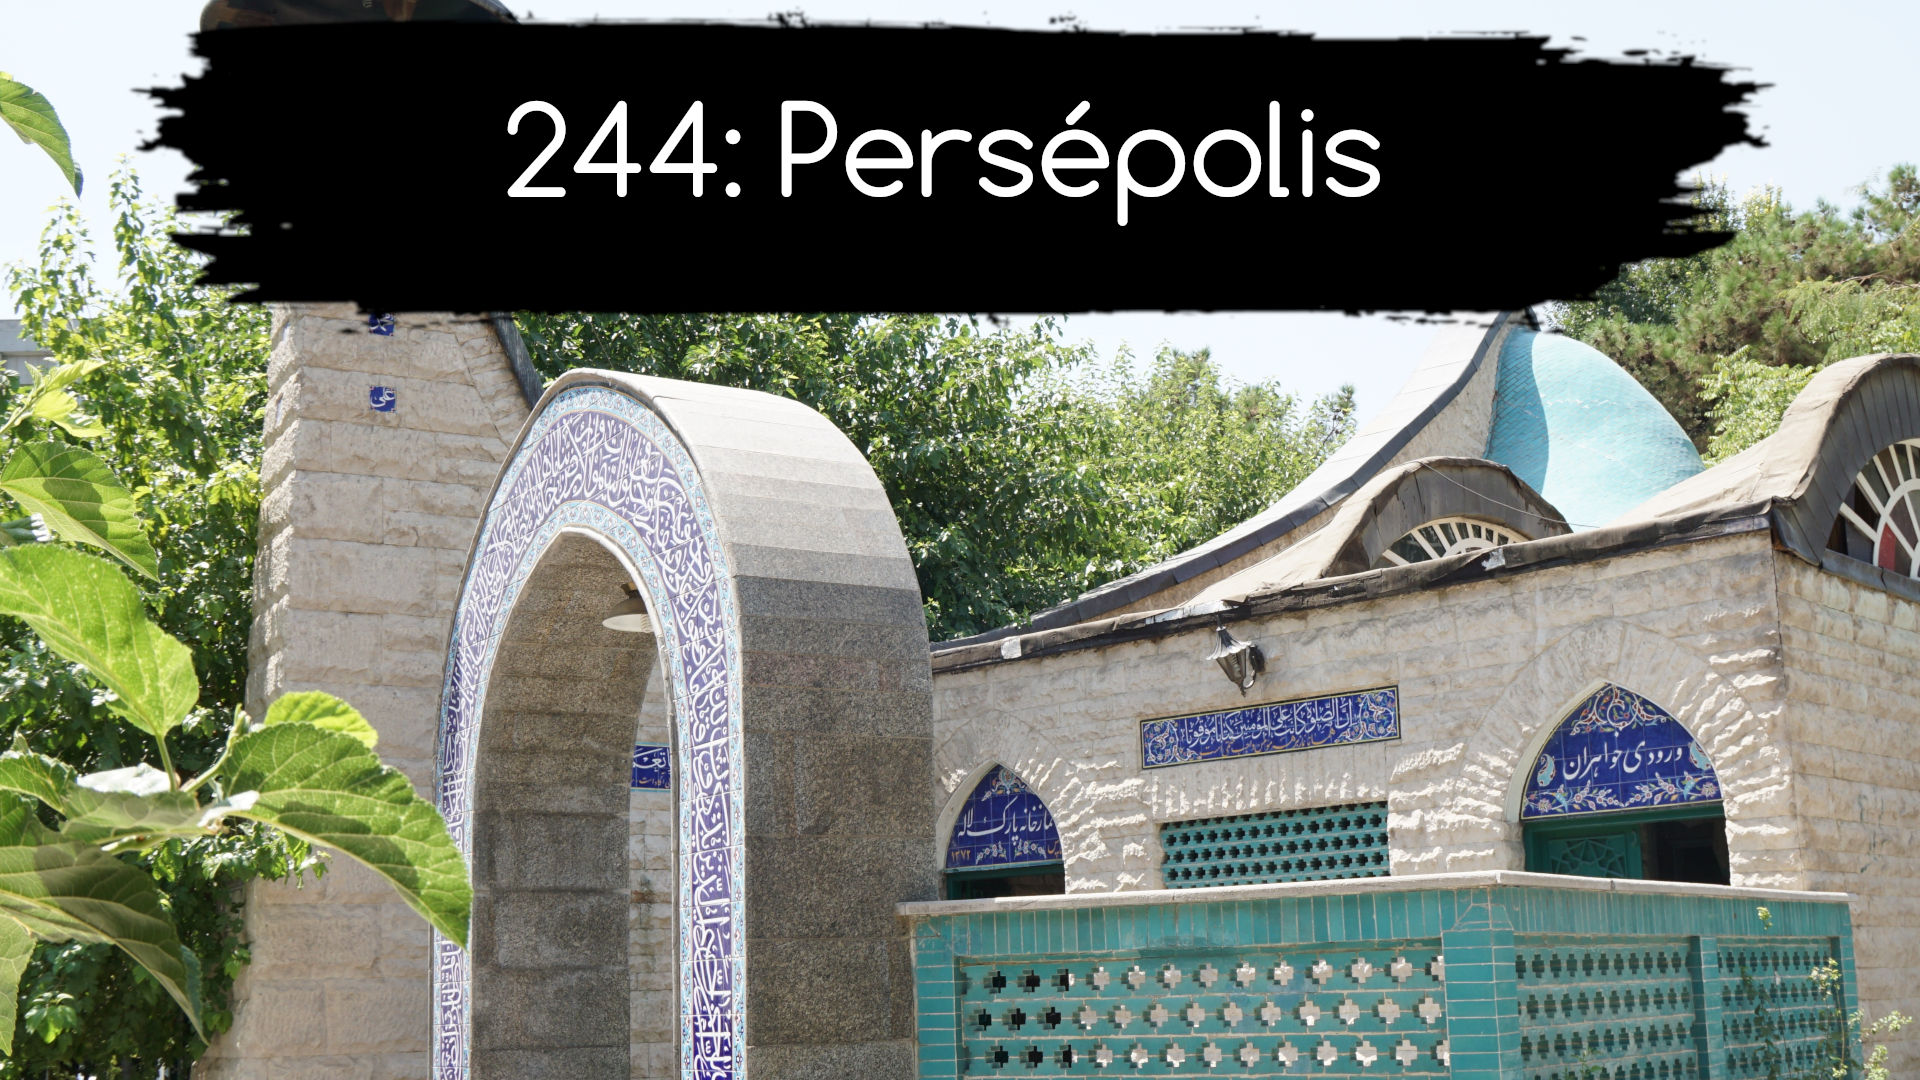 244: Persépolis